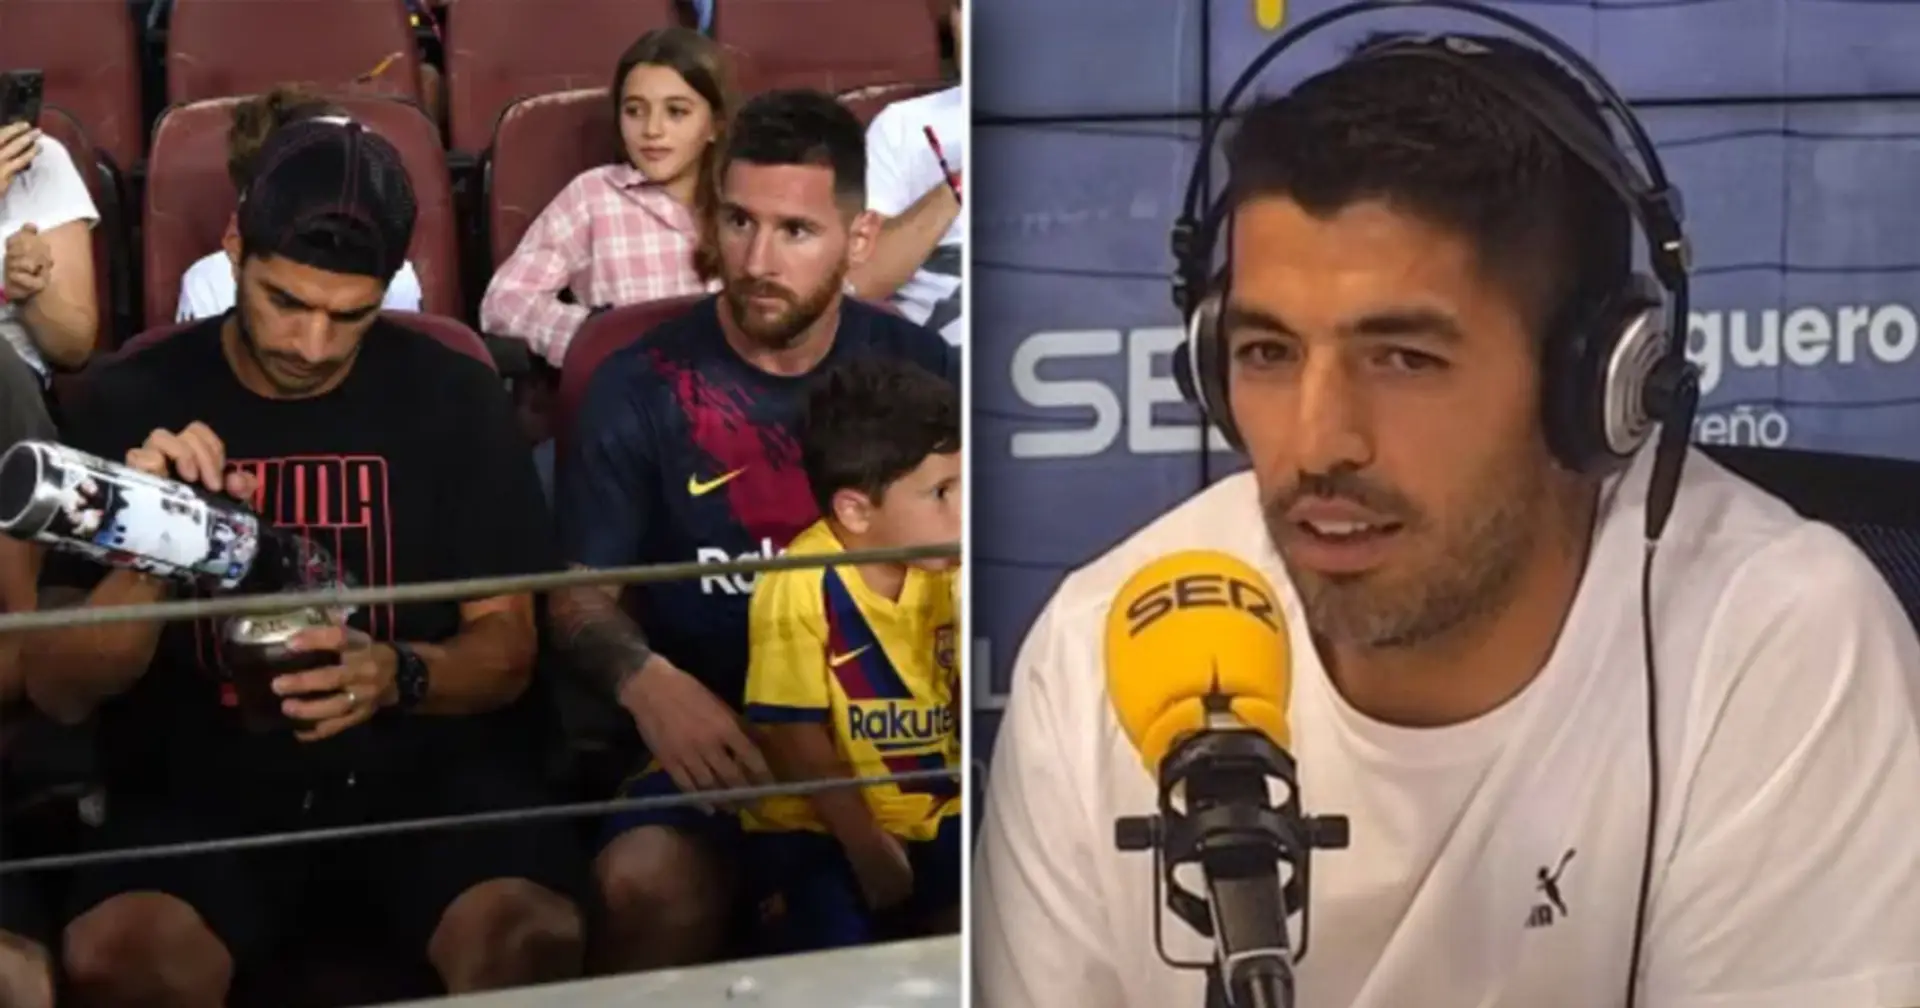 Suarez bestätigt, dass Messi um eine private Loge im Camp Nou für seine Familie gebeten hat - erklärt, warum das nicht falsch ist